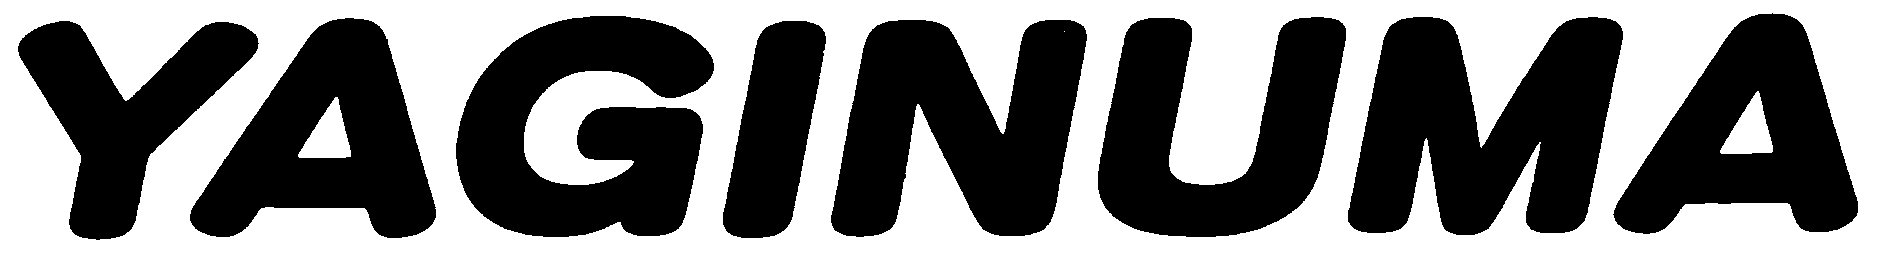 柳沼プレス工業株式会社のロゴ